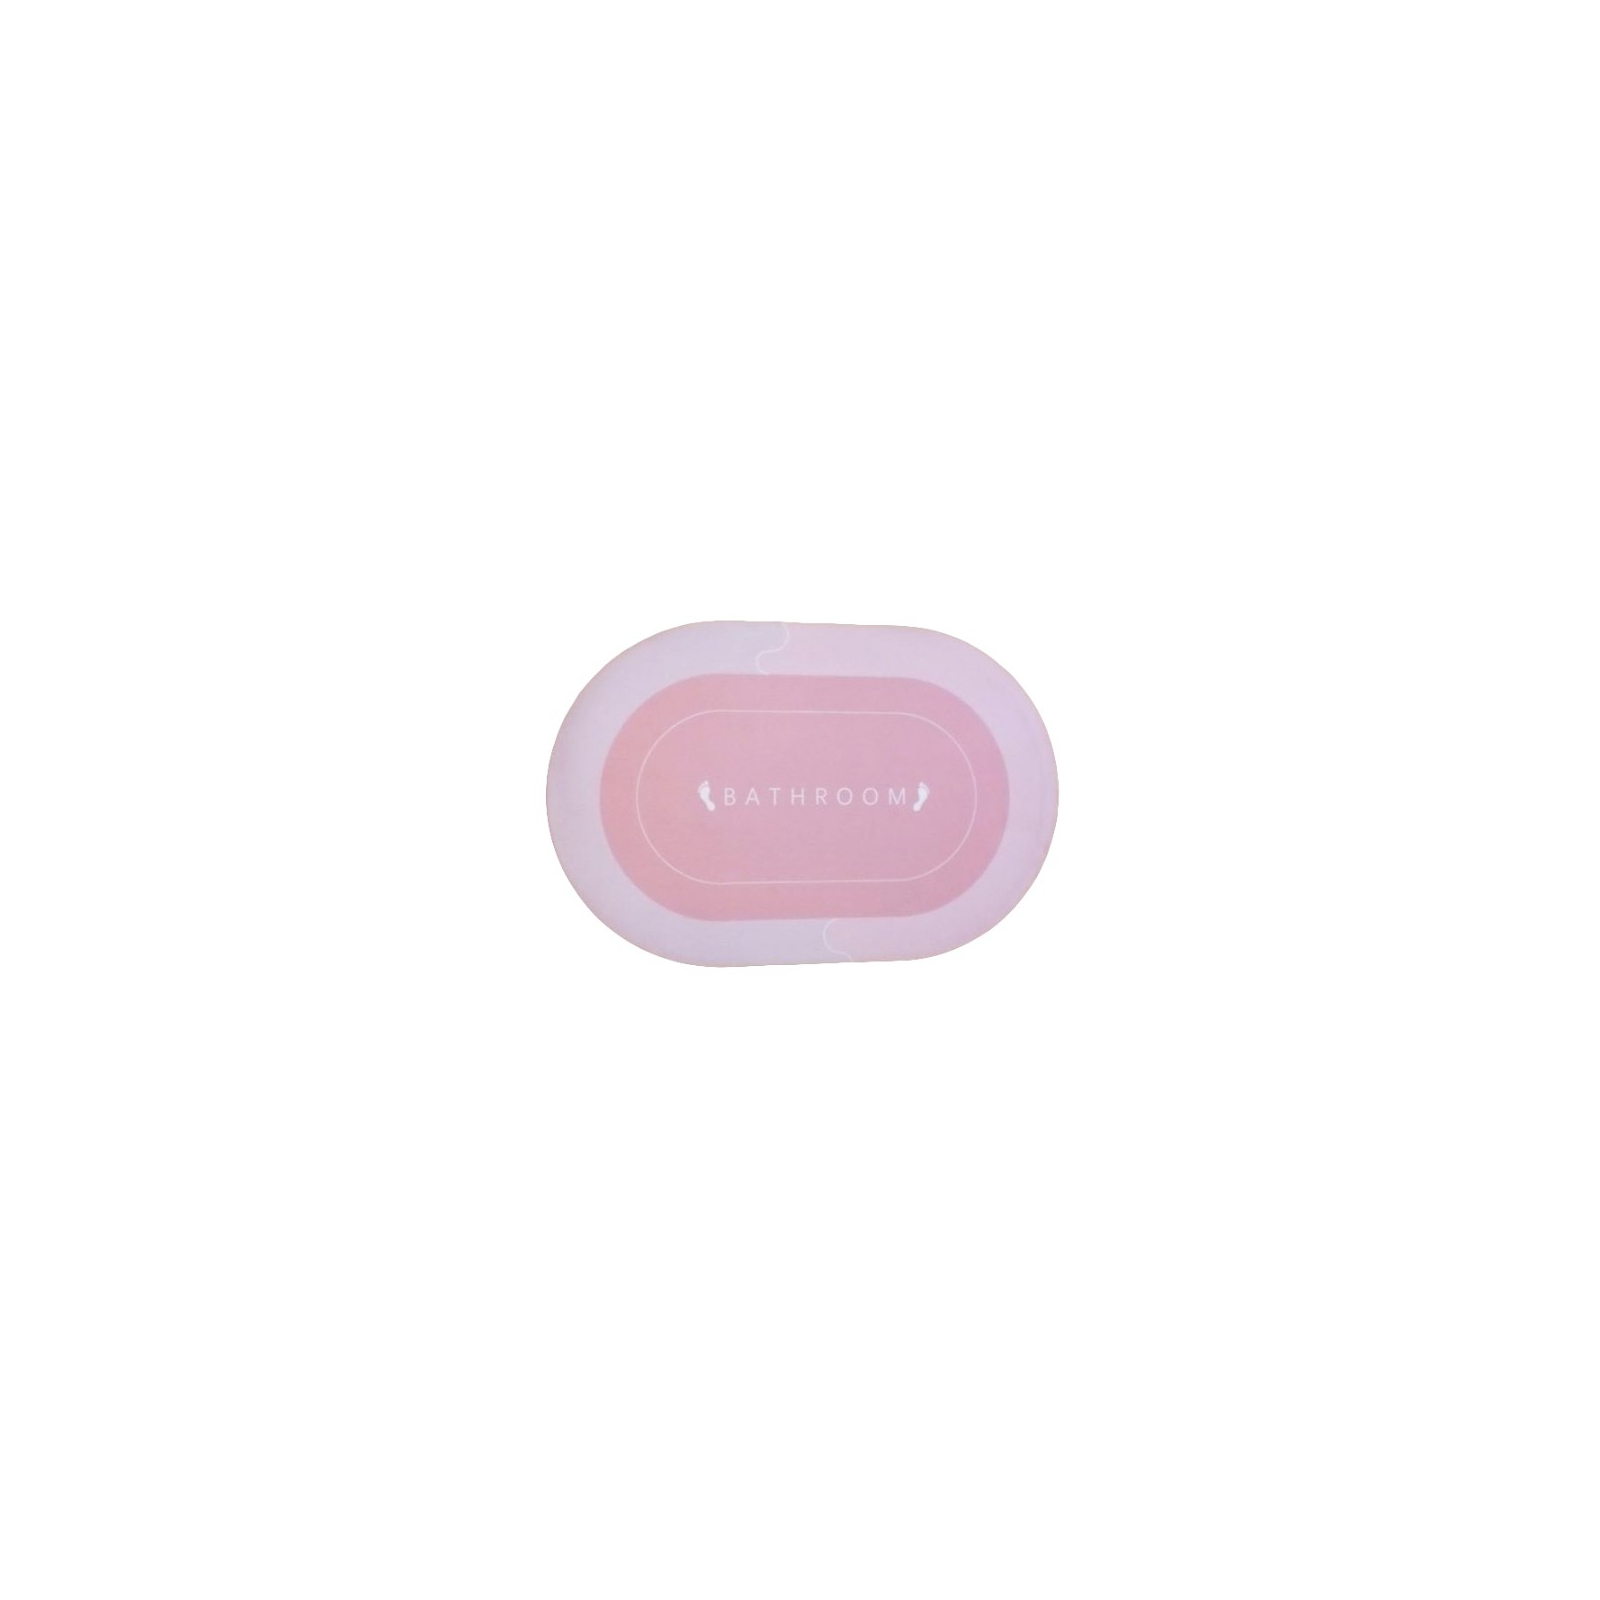 Коврик для ванной Stenson суперпоглощающий 40 х 60 см овальный розовый (R30939 pink) изображение 3